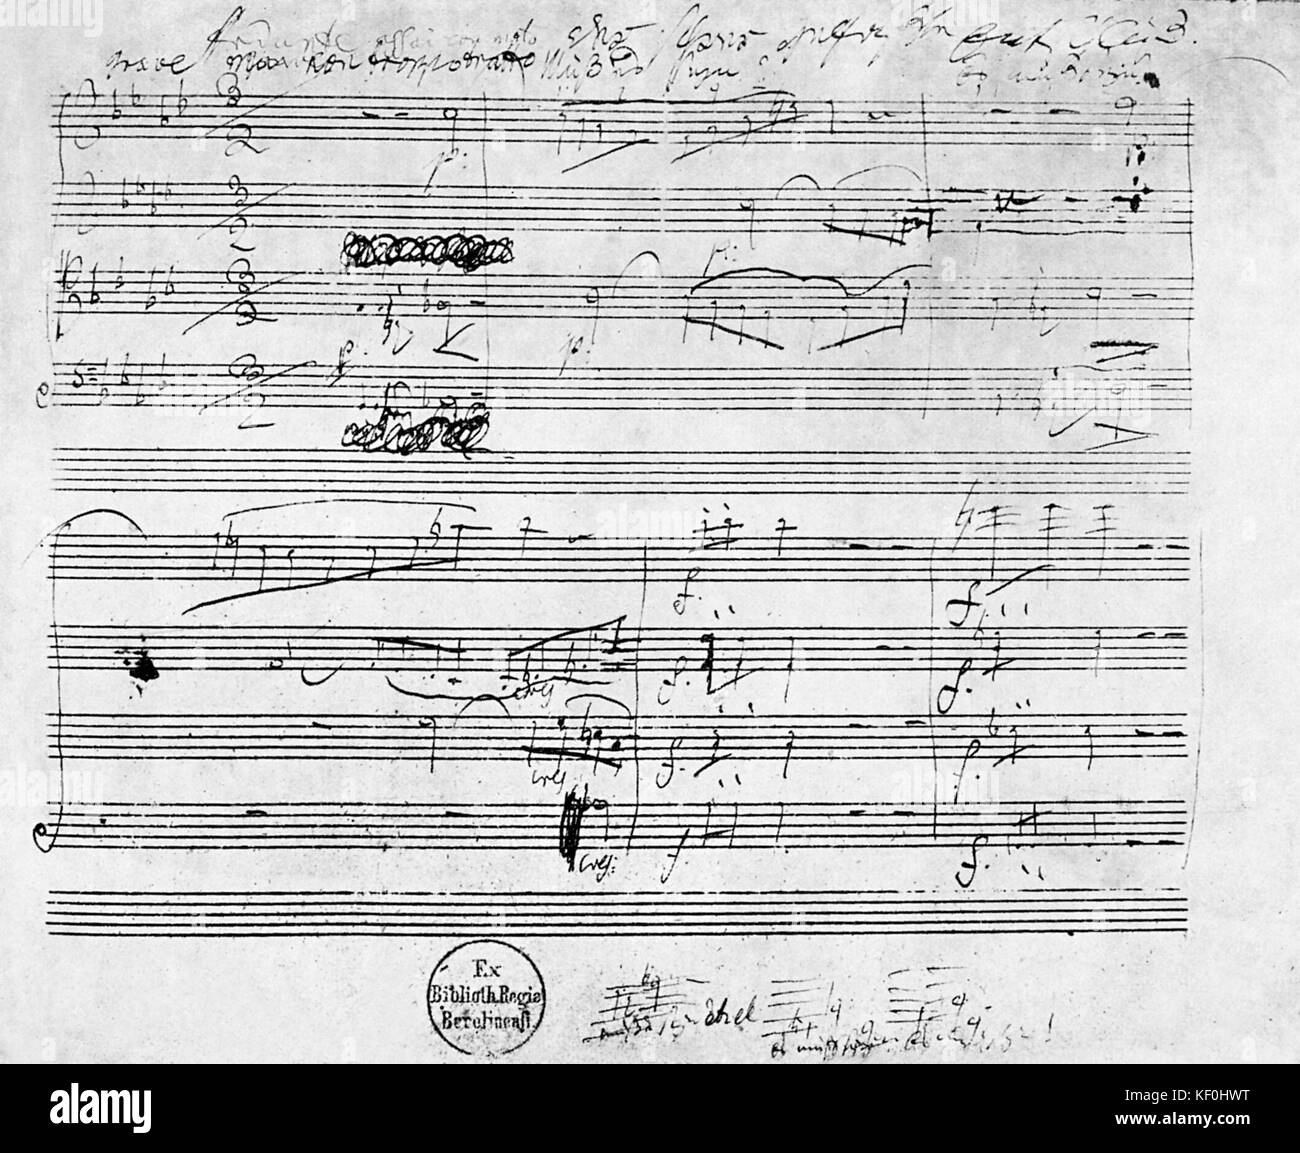 Ludwig van Beethoven Cuarteto de Cuerda en fa mayor, opus 135. Partitura manuscrita / manuscrito original. Compositor alemán, el 17 de diciembre de 1770- 26 de marzo de 1827. Foto de stock